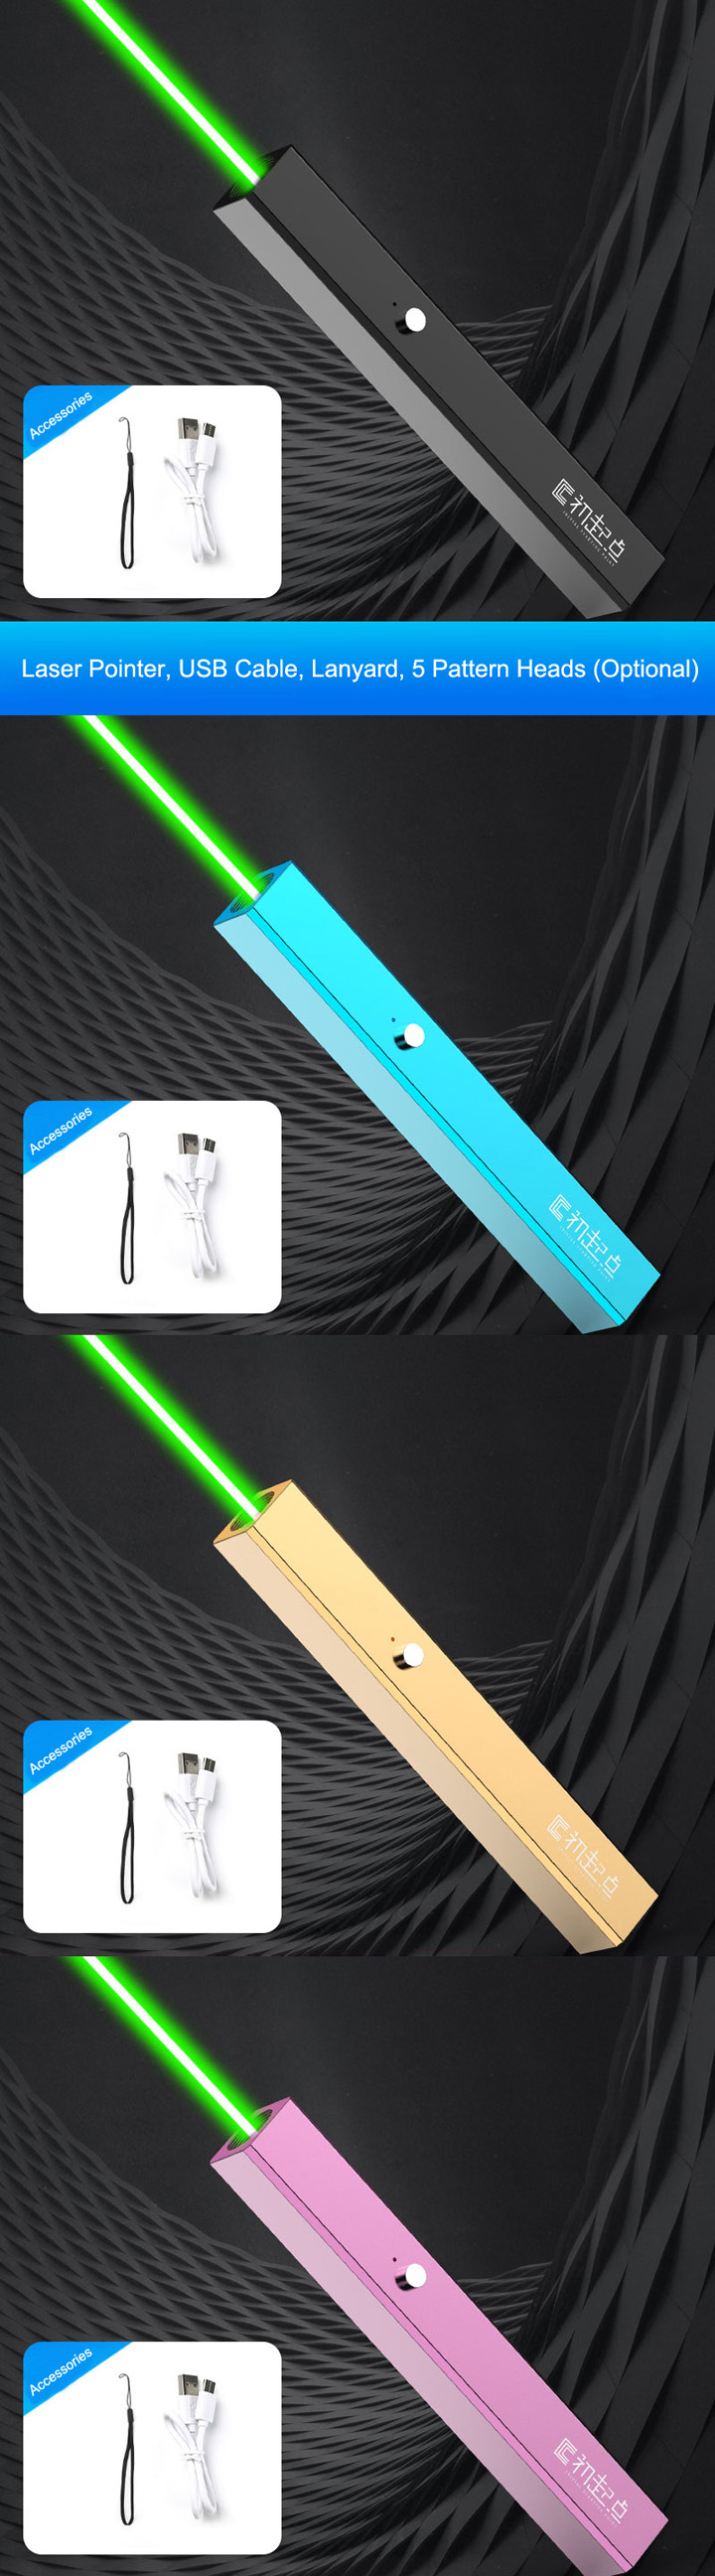 puntatore laser verde lunga portata